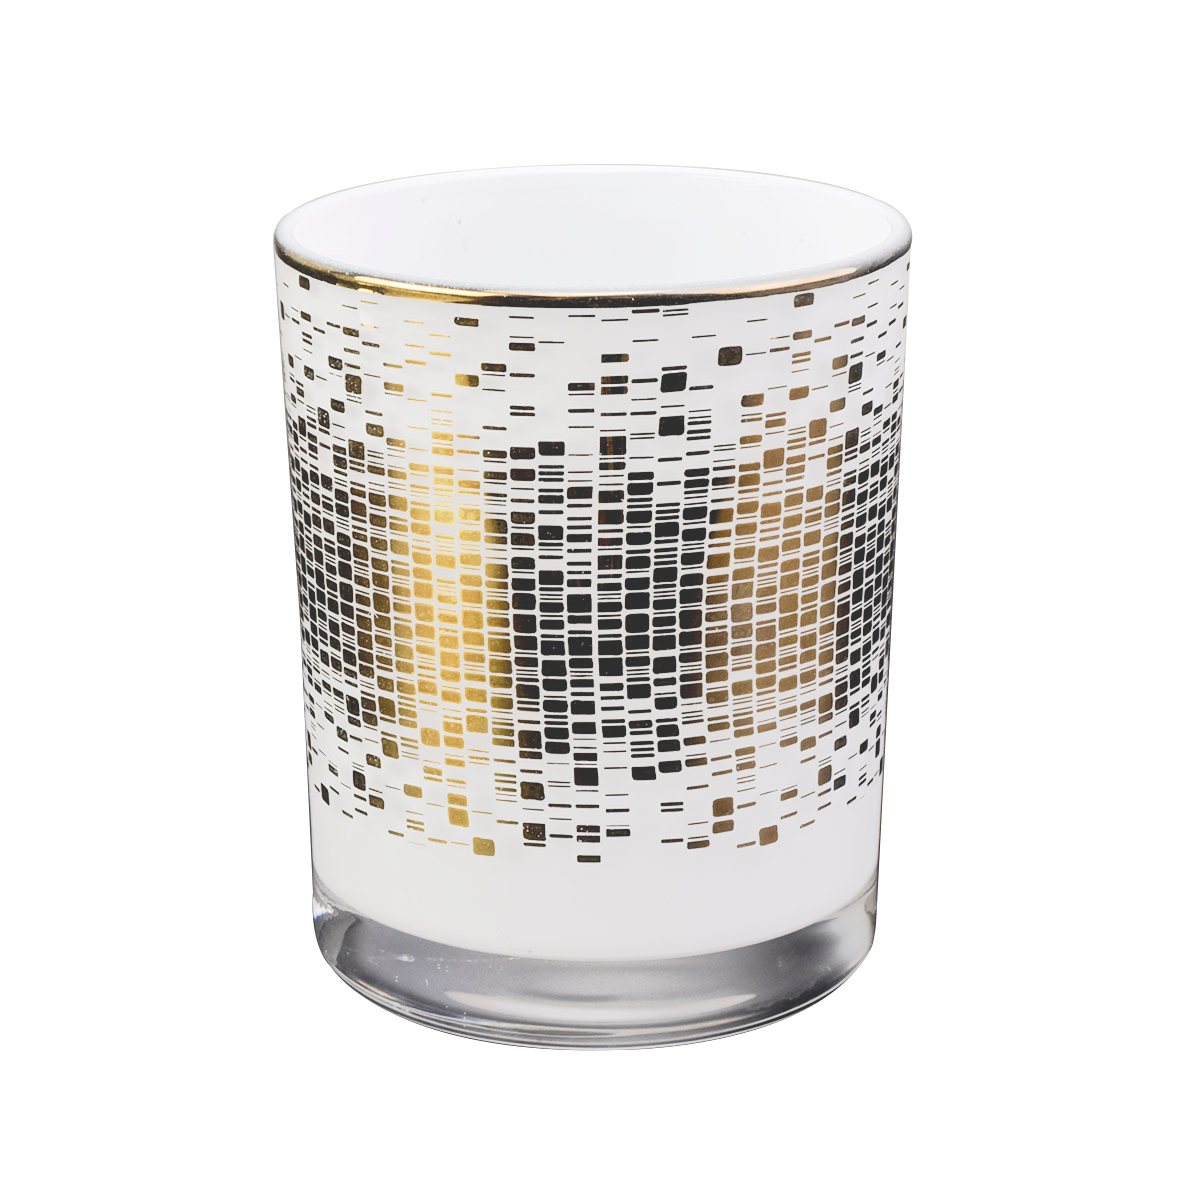 独特的白色格拉斯蜡烛罐，用于制作蜡烛